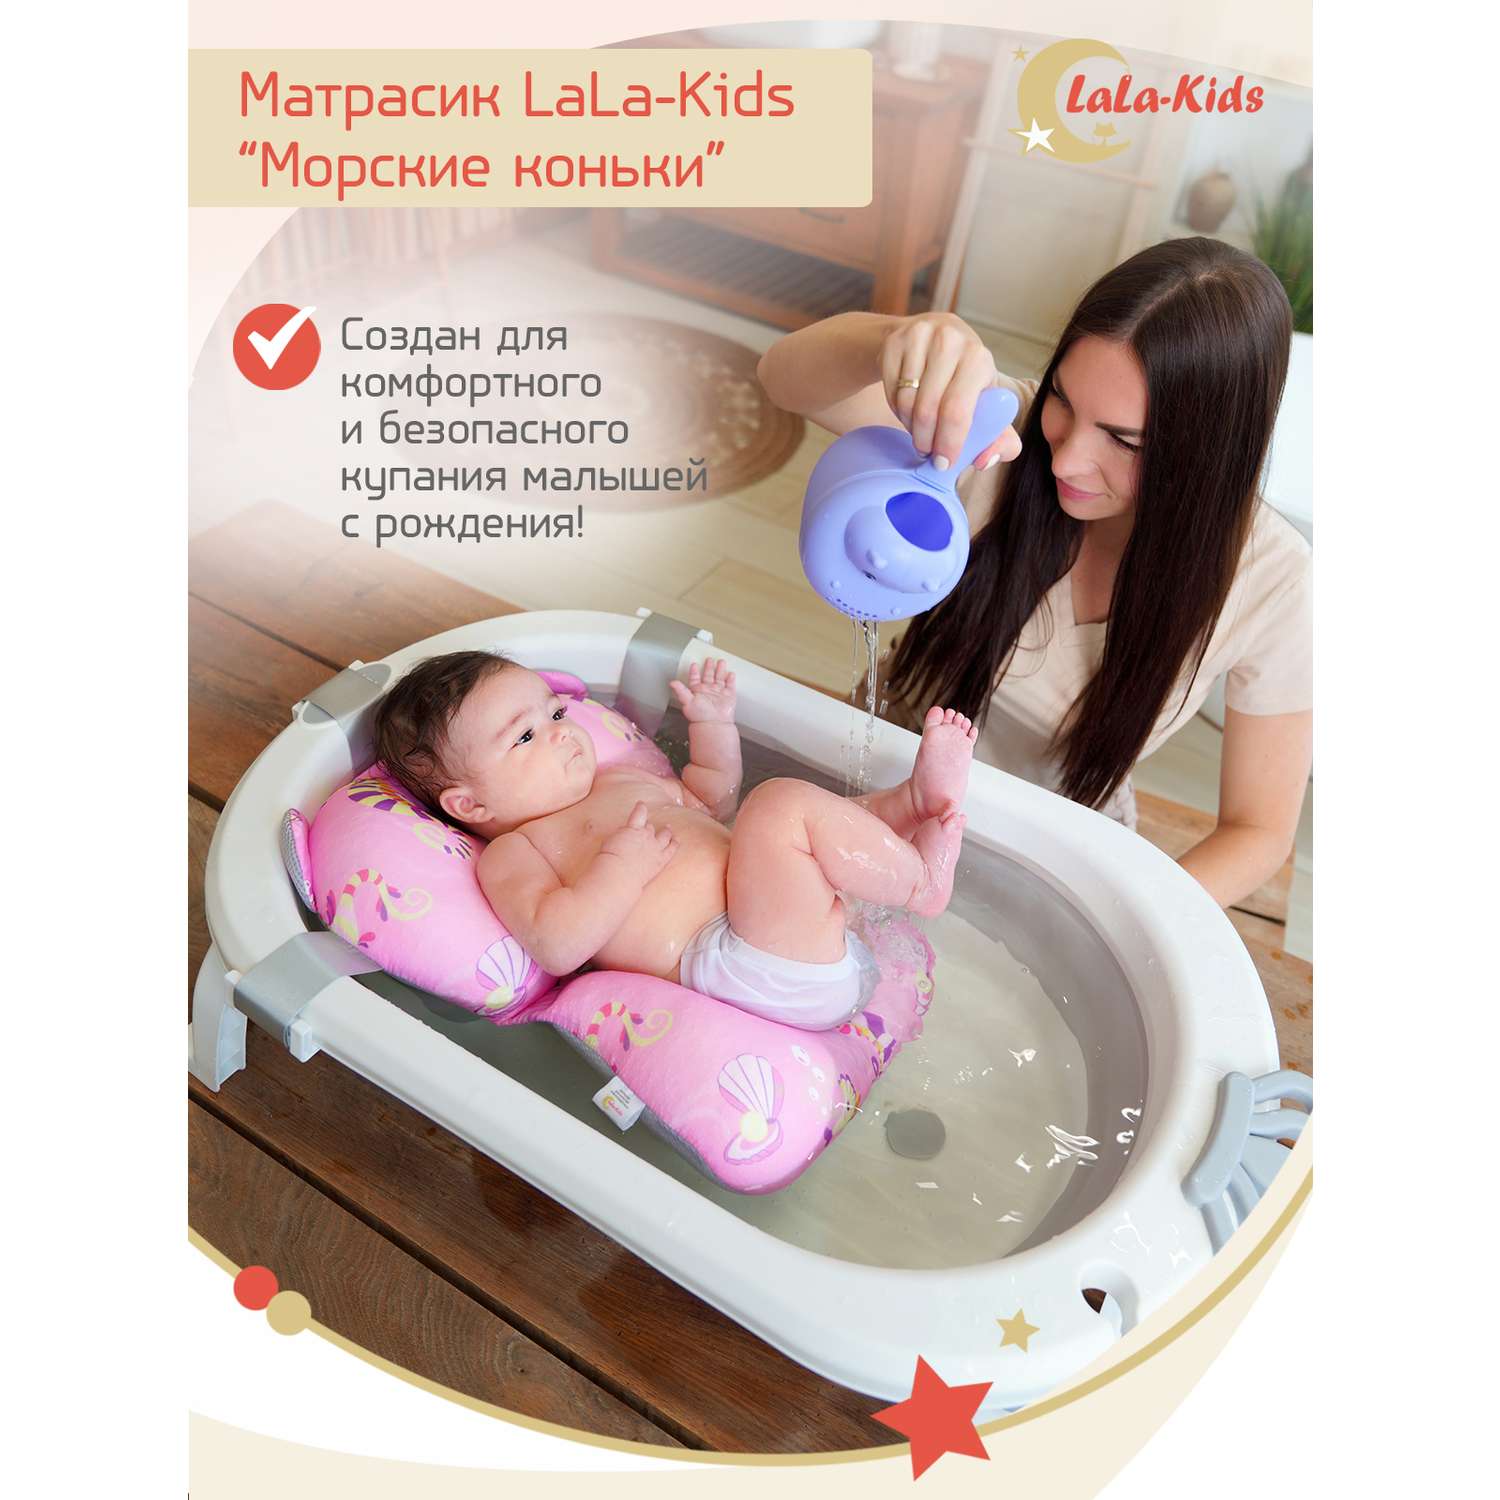 Матрасик Морские коньки LaLa-Kids для купания новорожденных - фото 2